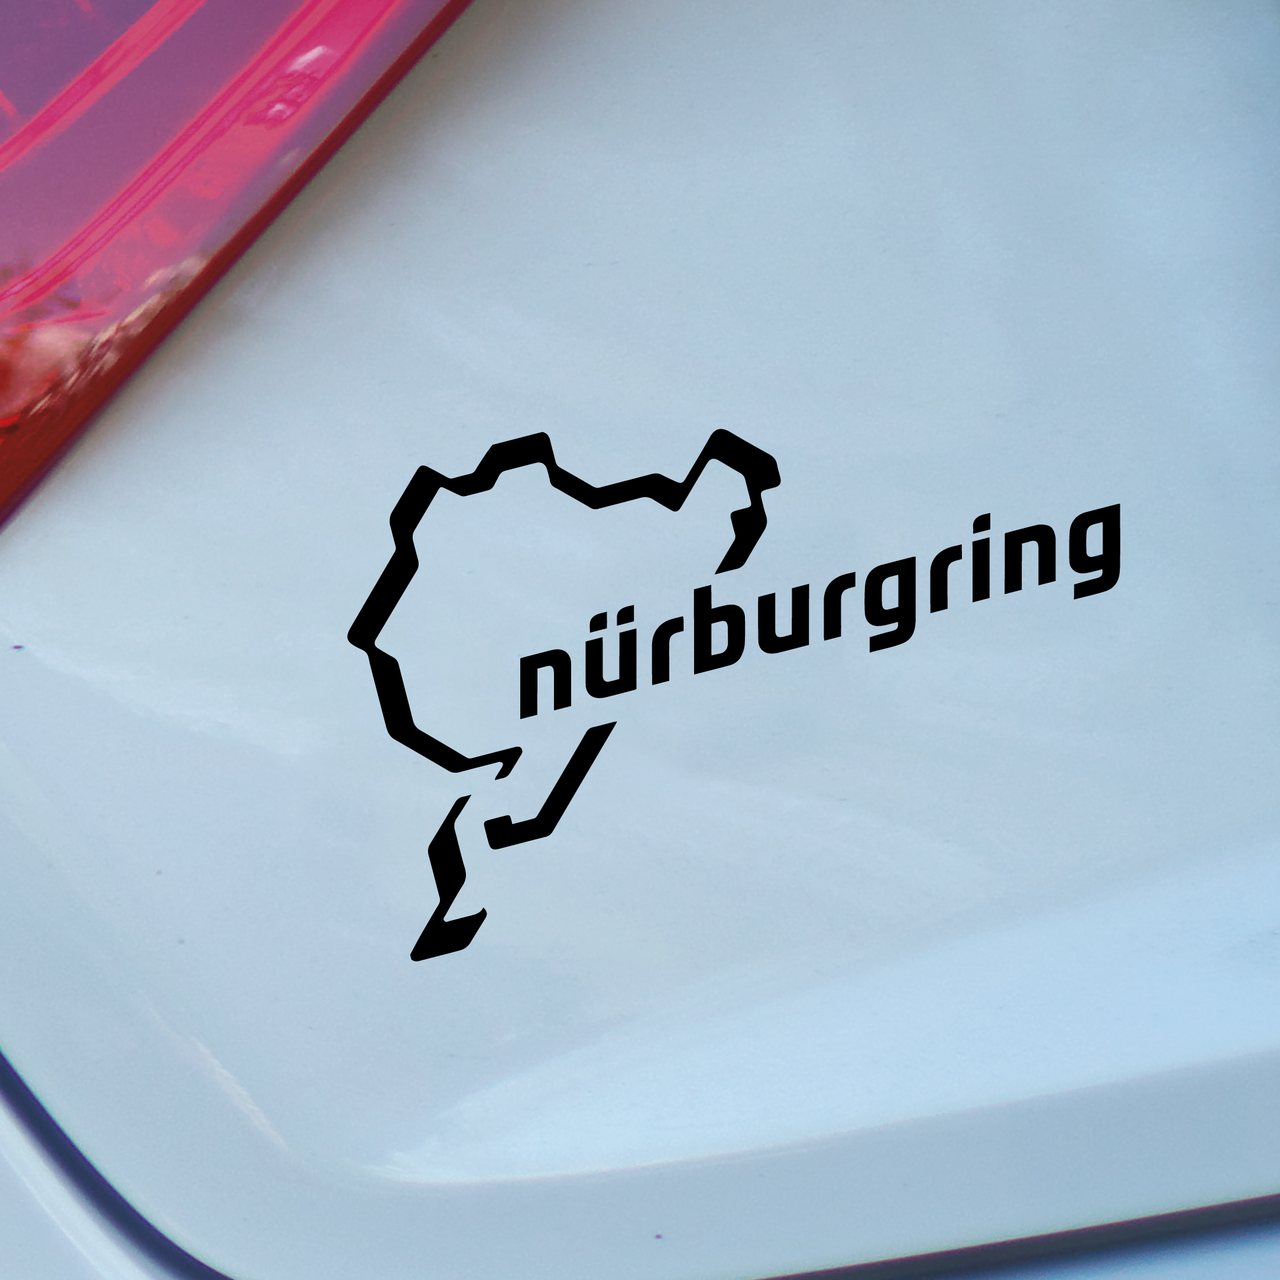 Nurburgring Car Decal